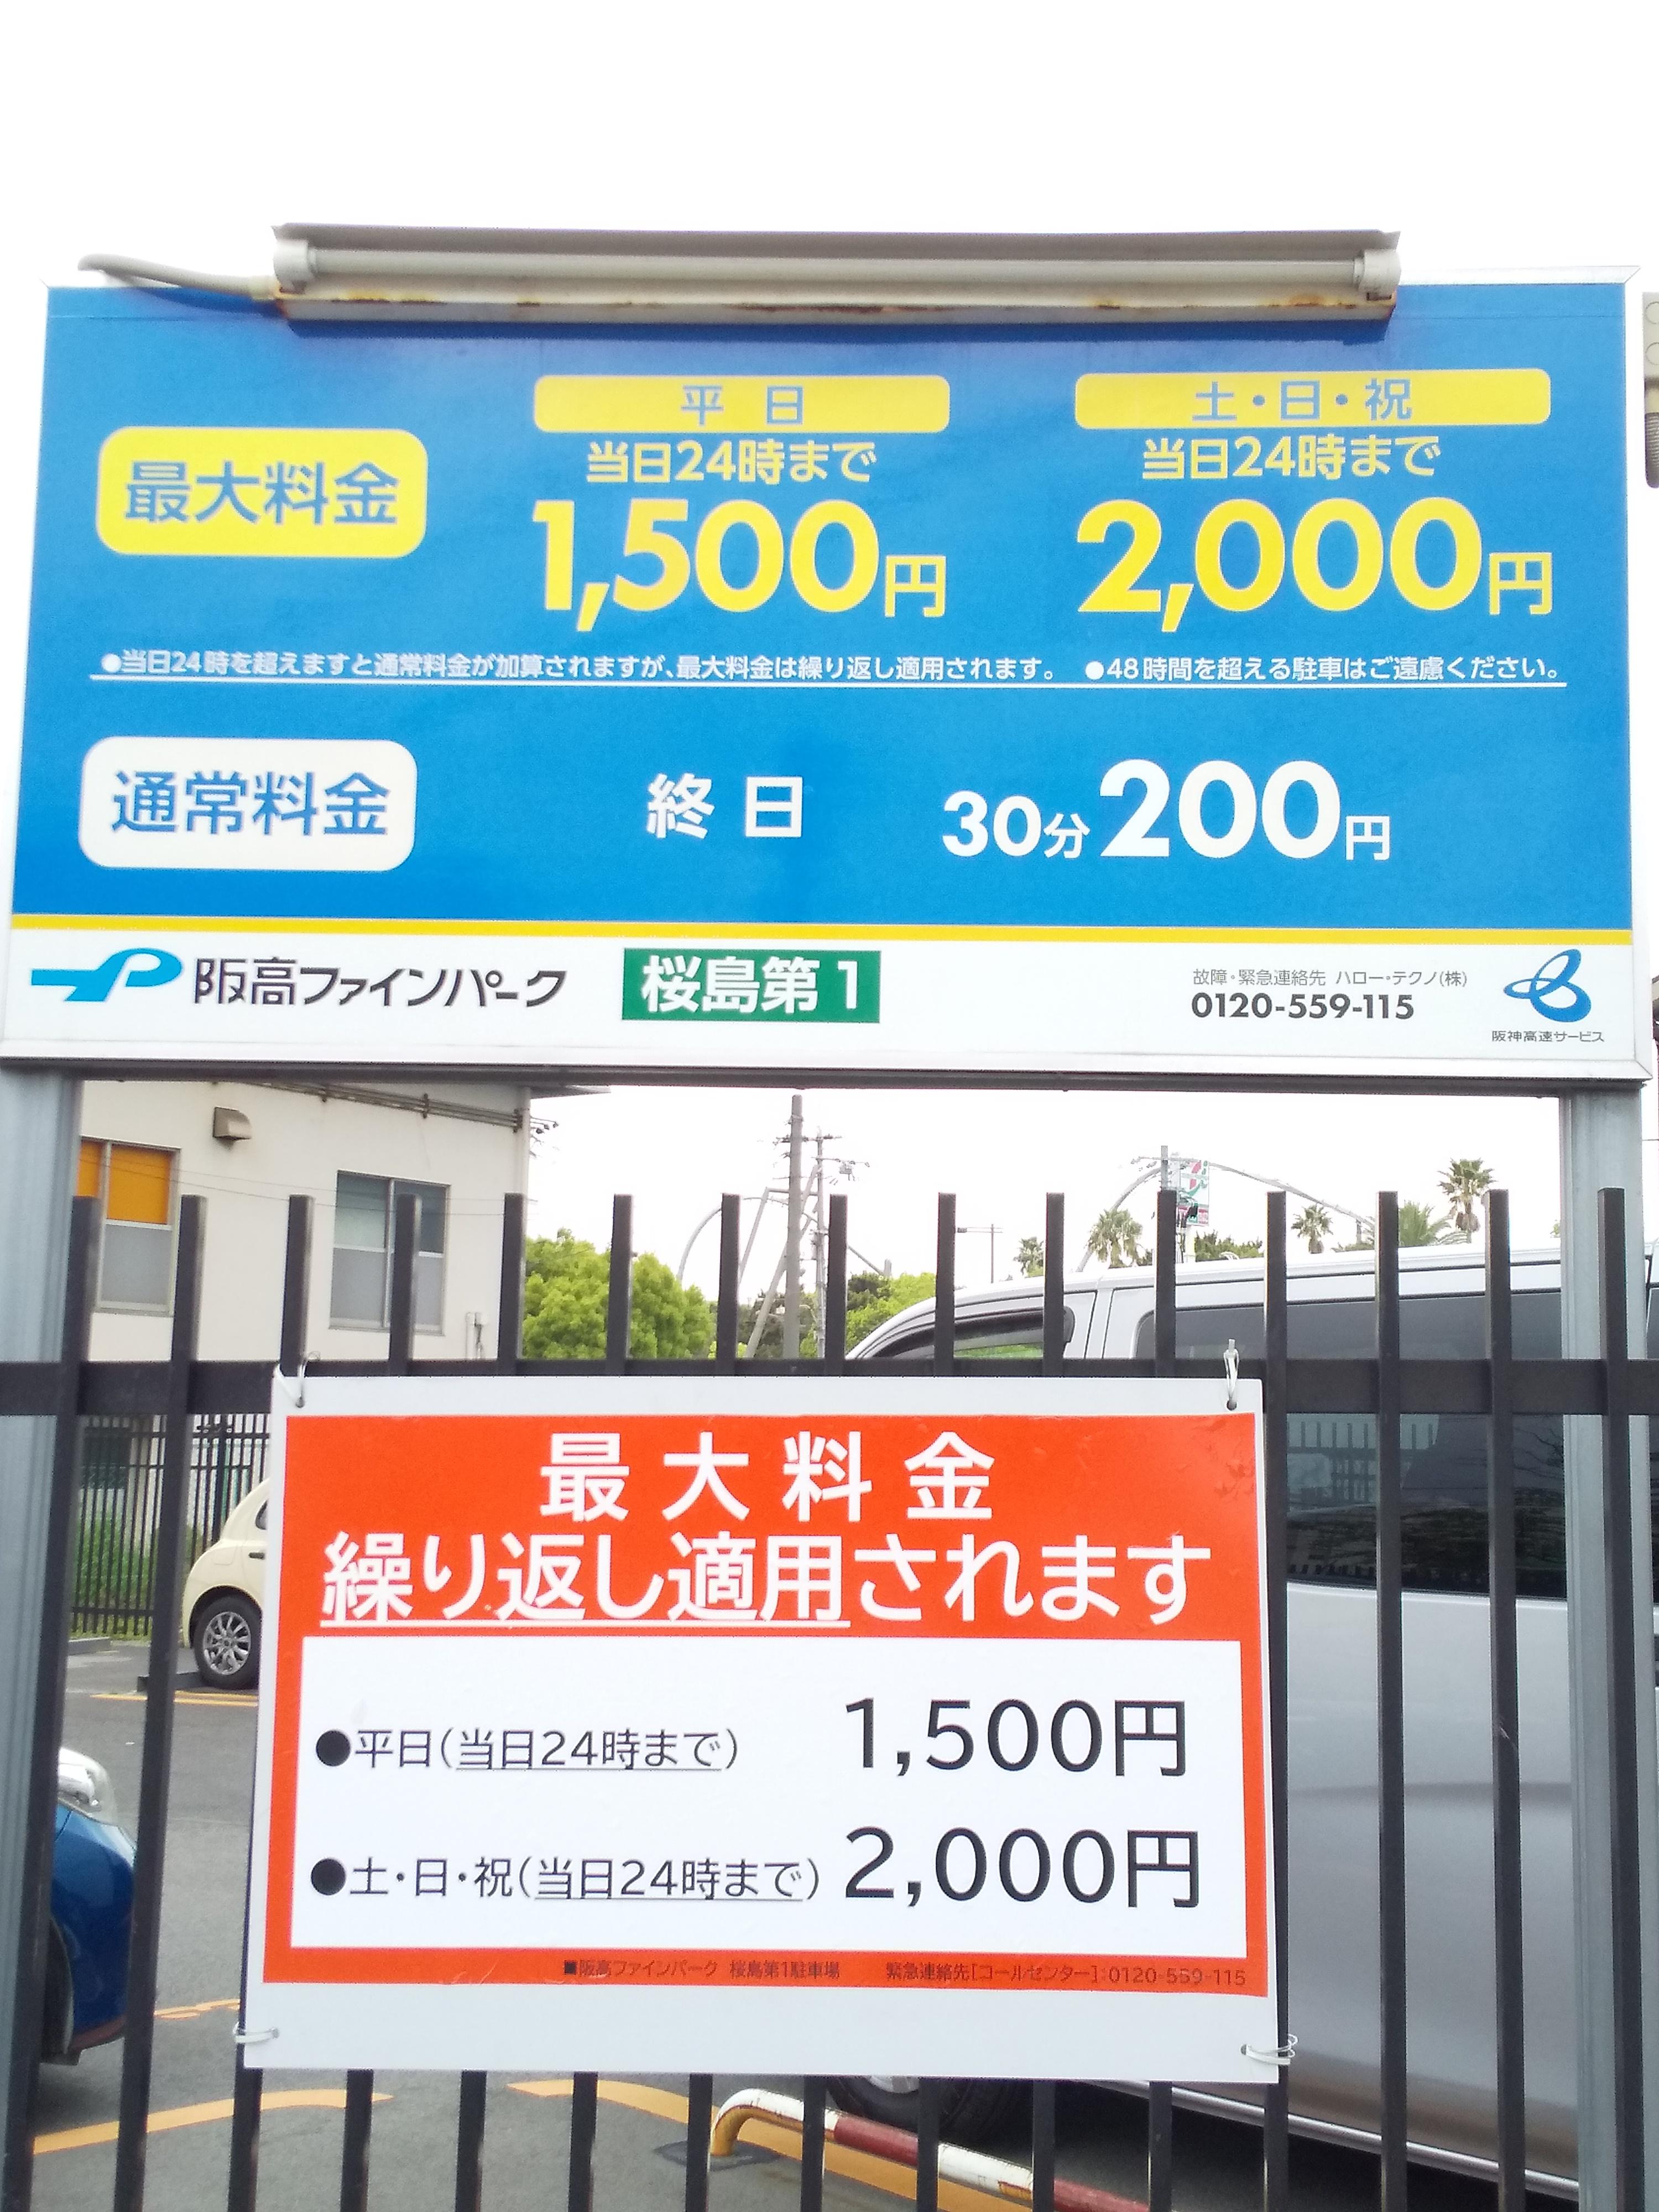 阪高ファインパーク 桜島第1 阪神高速サービスの時間貸駐車場 阪高ファインパーク